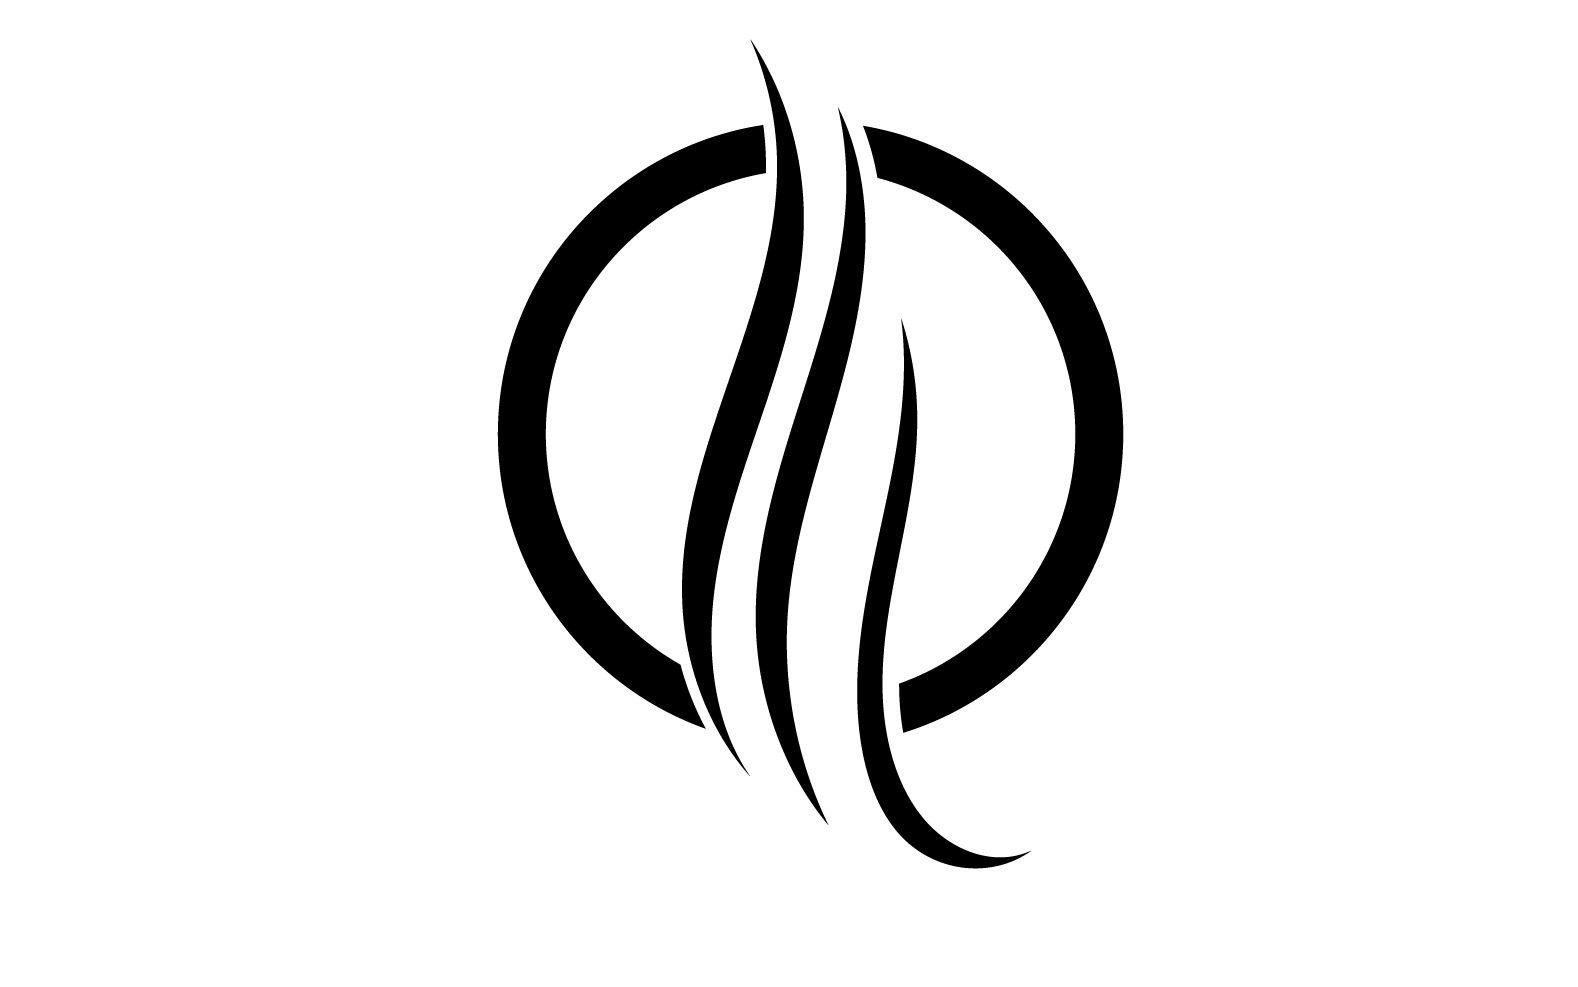 Hair line wave design  logo and symbol vector v30